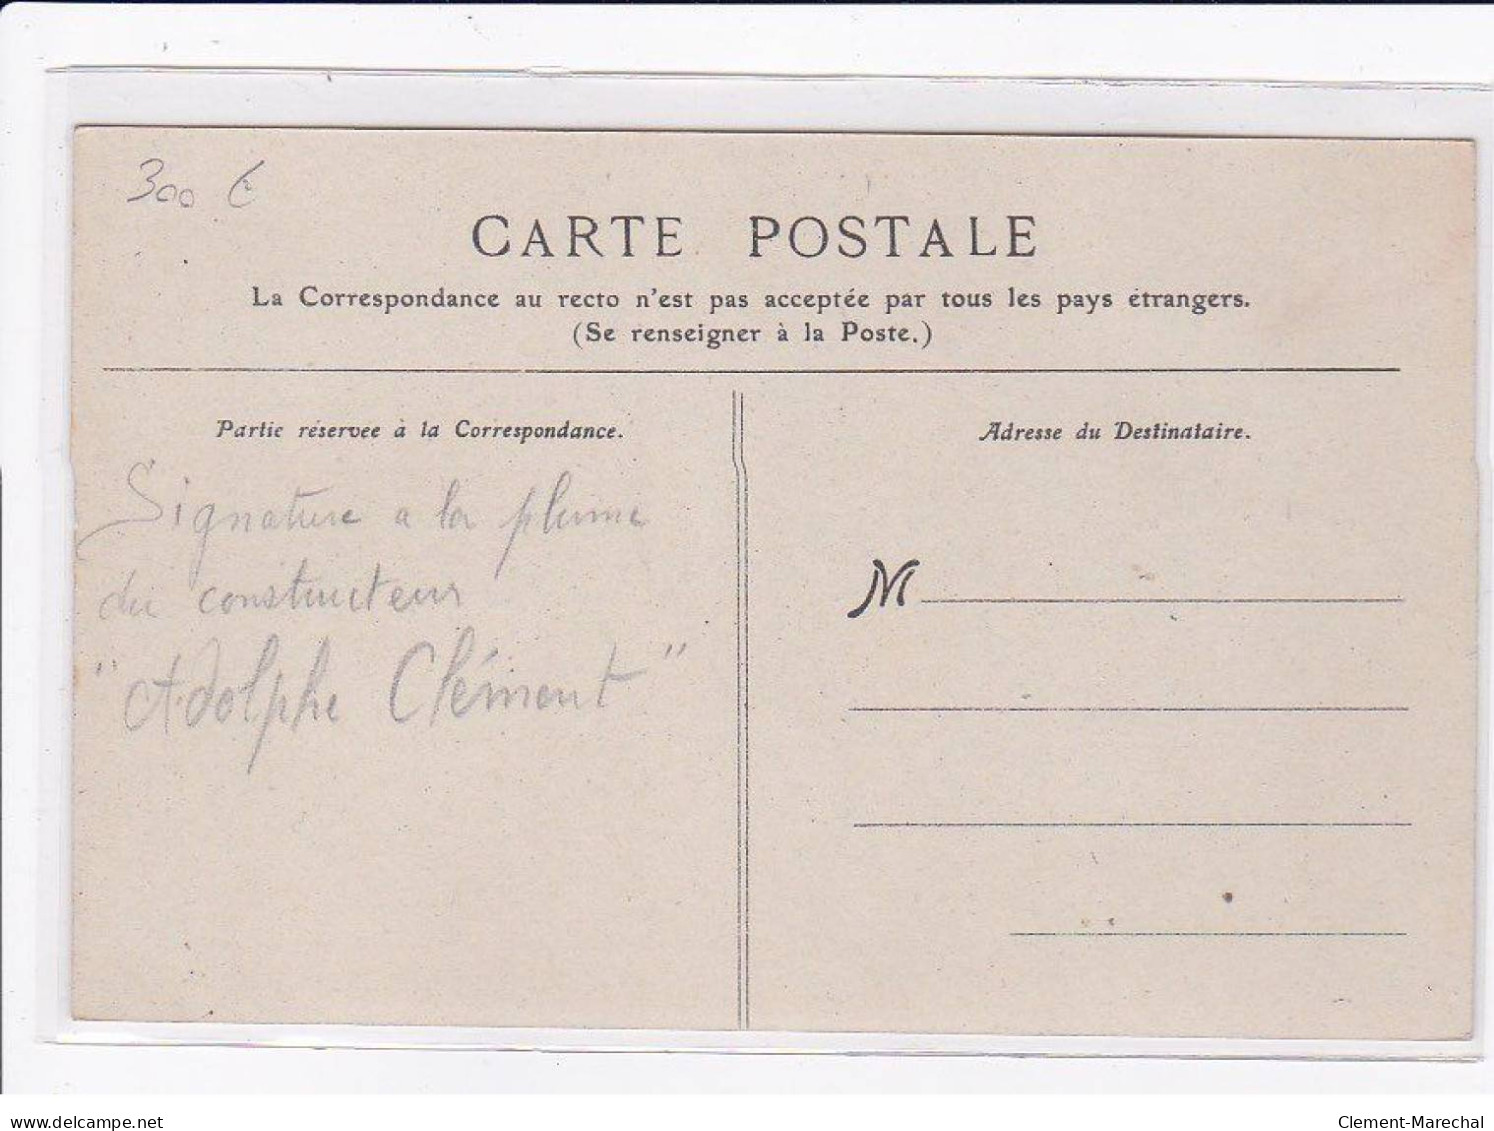 AVIATION : BALLON - Autographe D' Adolphe CLEMENT (constructeur CLEMENT-BAYARD) Raide Paris Compiegne- Bon état - Zeppeline